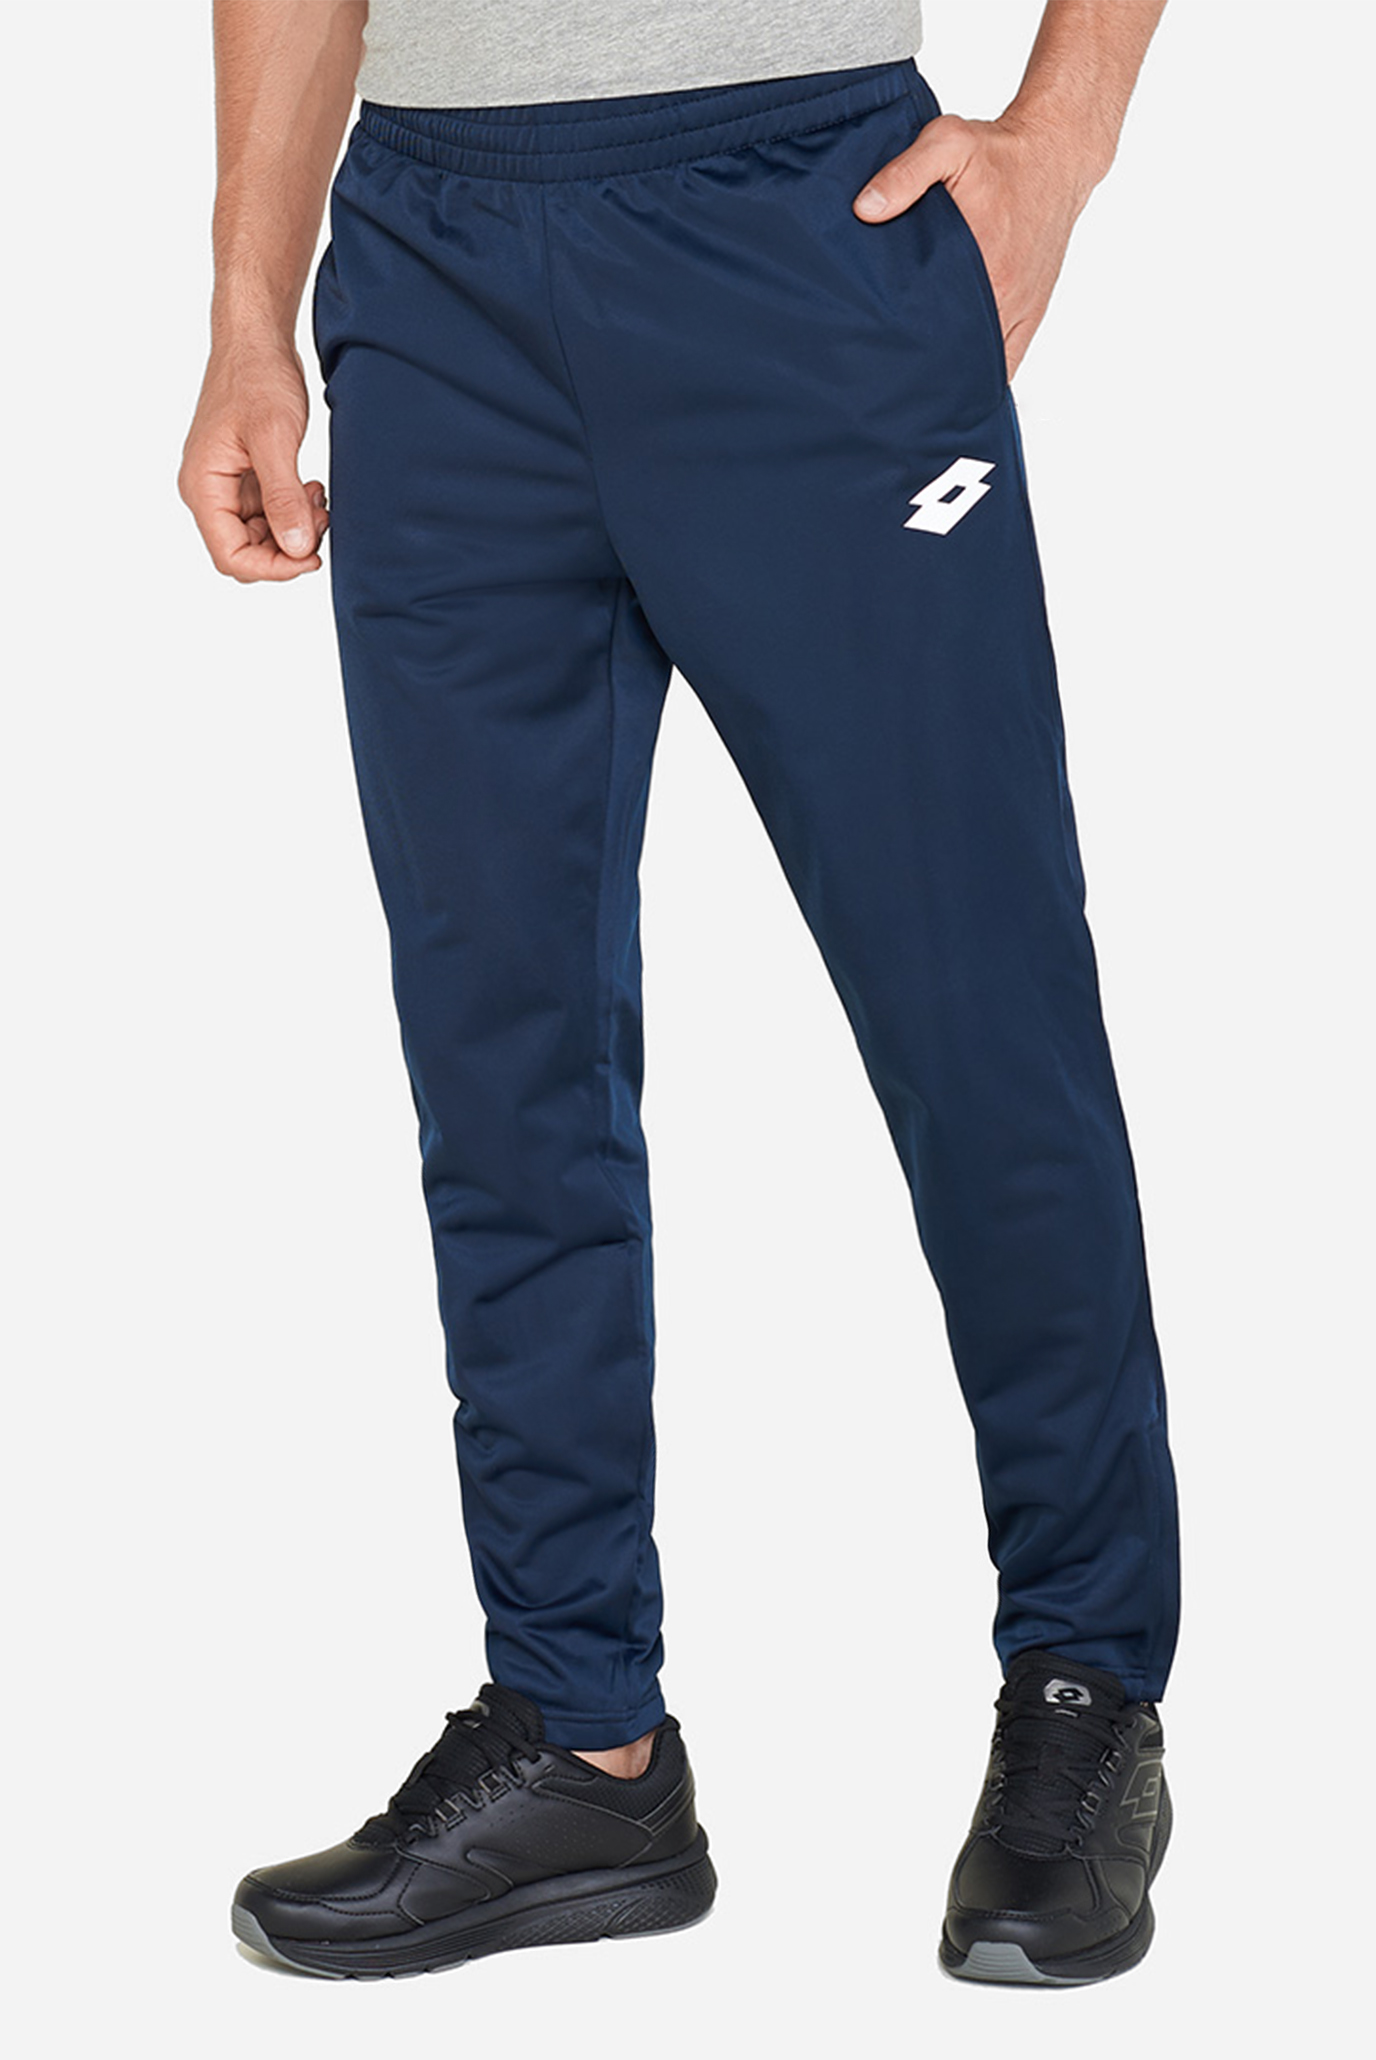 Мужские синие спортивные брюки DELTA PANT PL 1